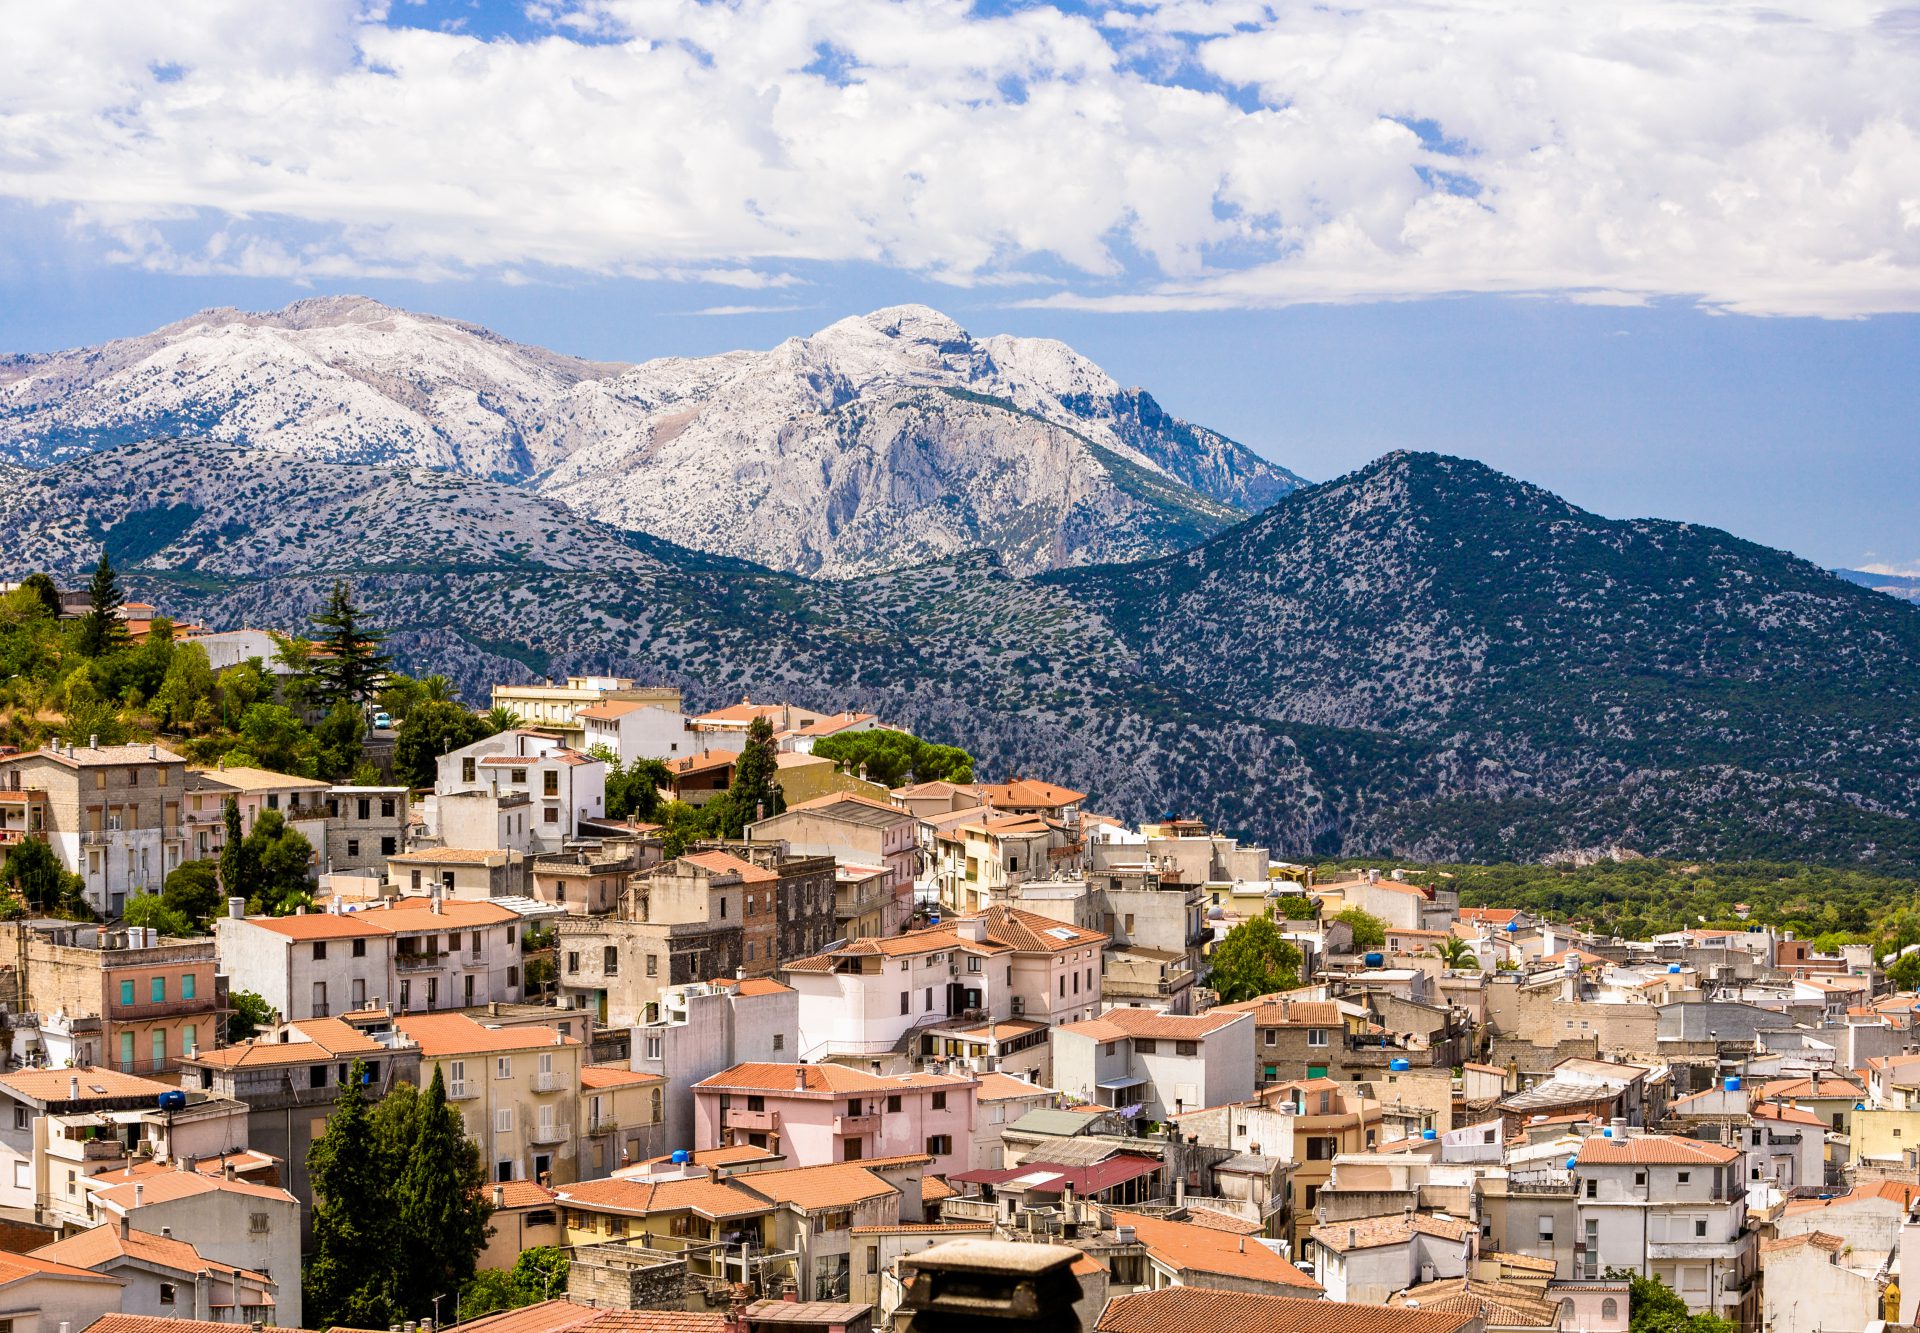 Foto panoramica del paese di Dorgali, nello sfondo il supramonte e il Monte Corrasi